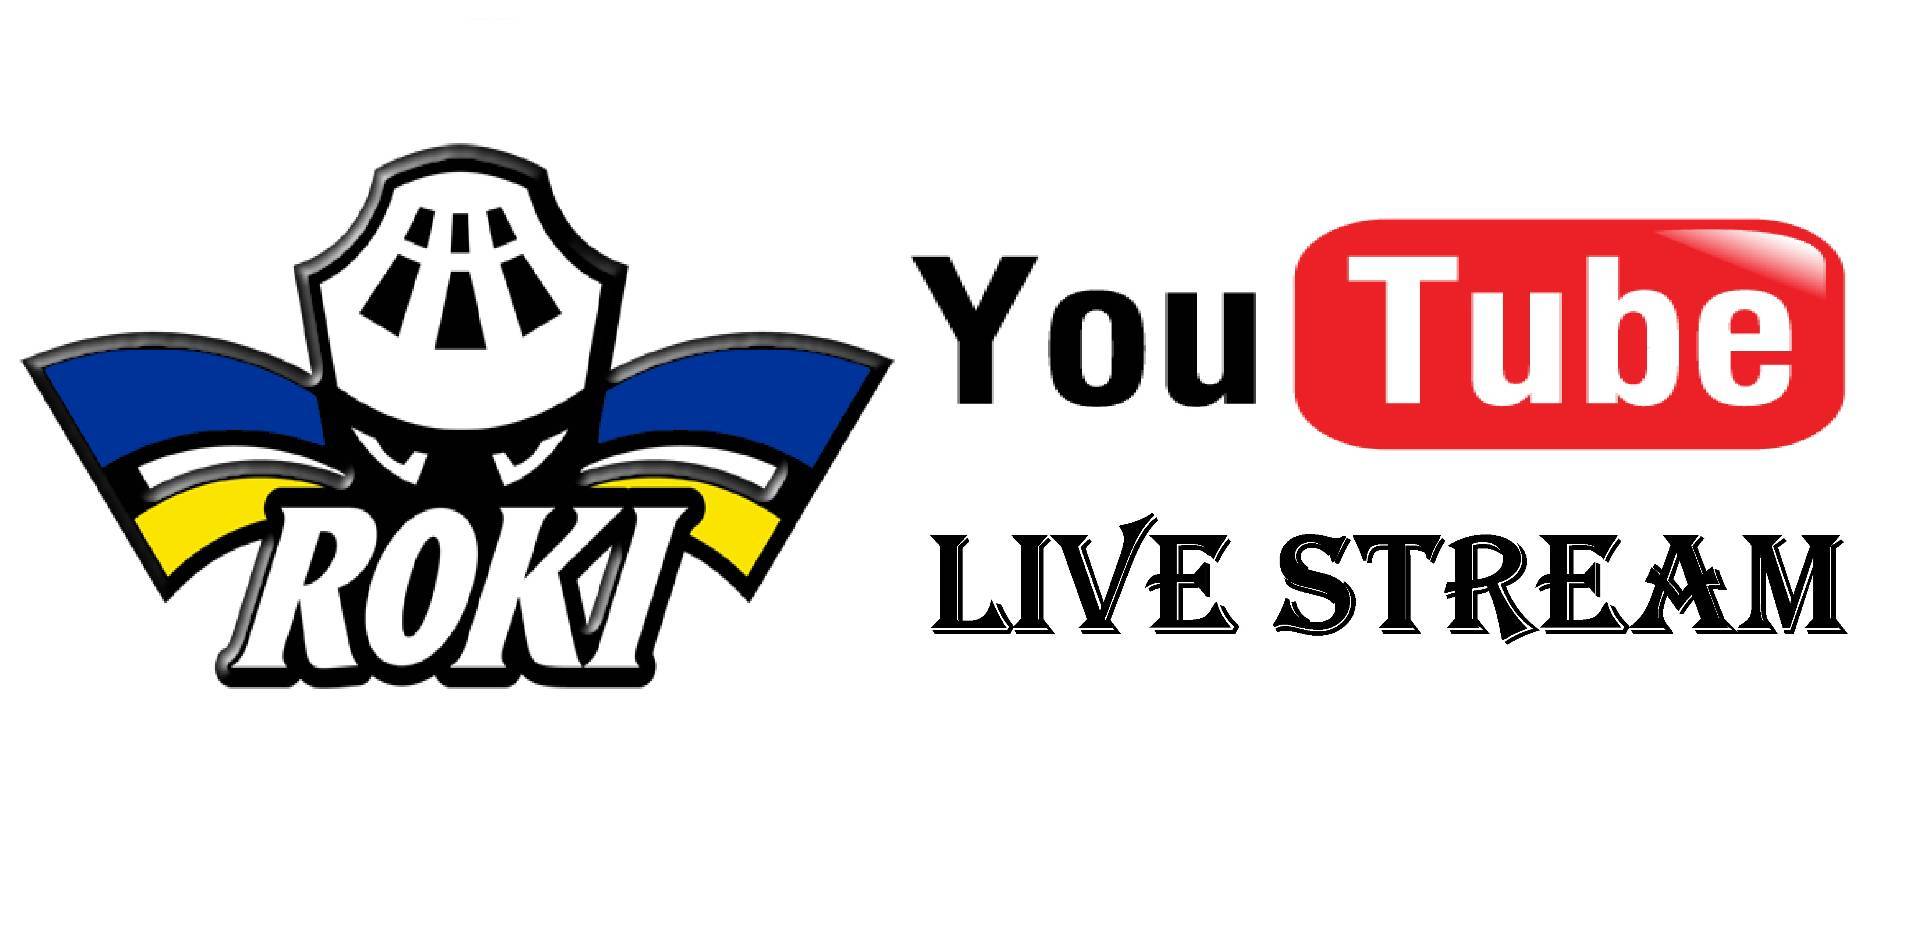 Rovaniemen Kiekko - null - Live stream -pelit Rokin Youtube -kanavalla -  viikonloppuna 6 peliä livenä